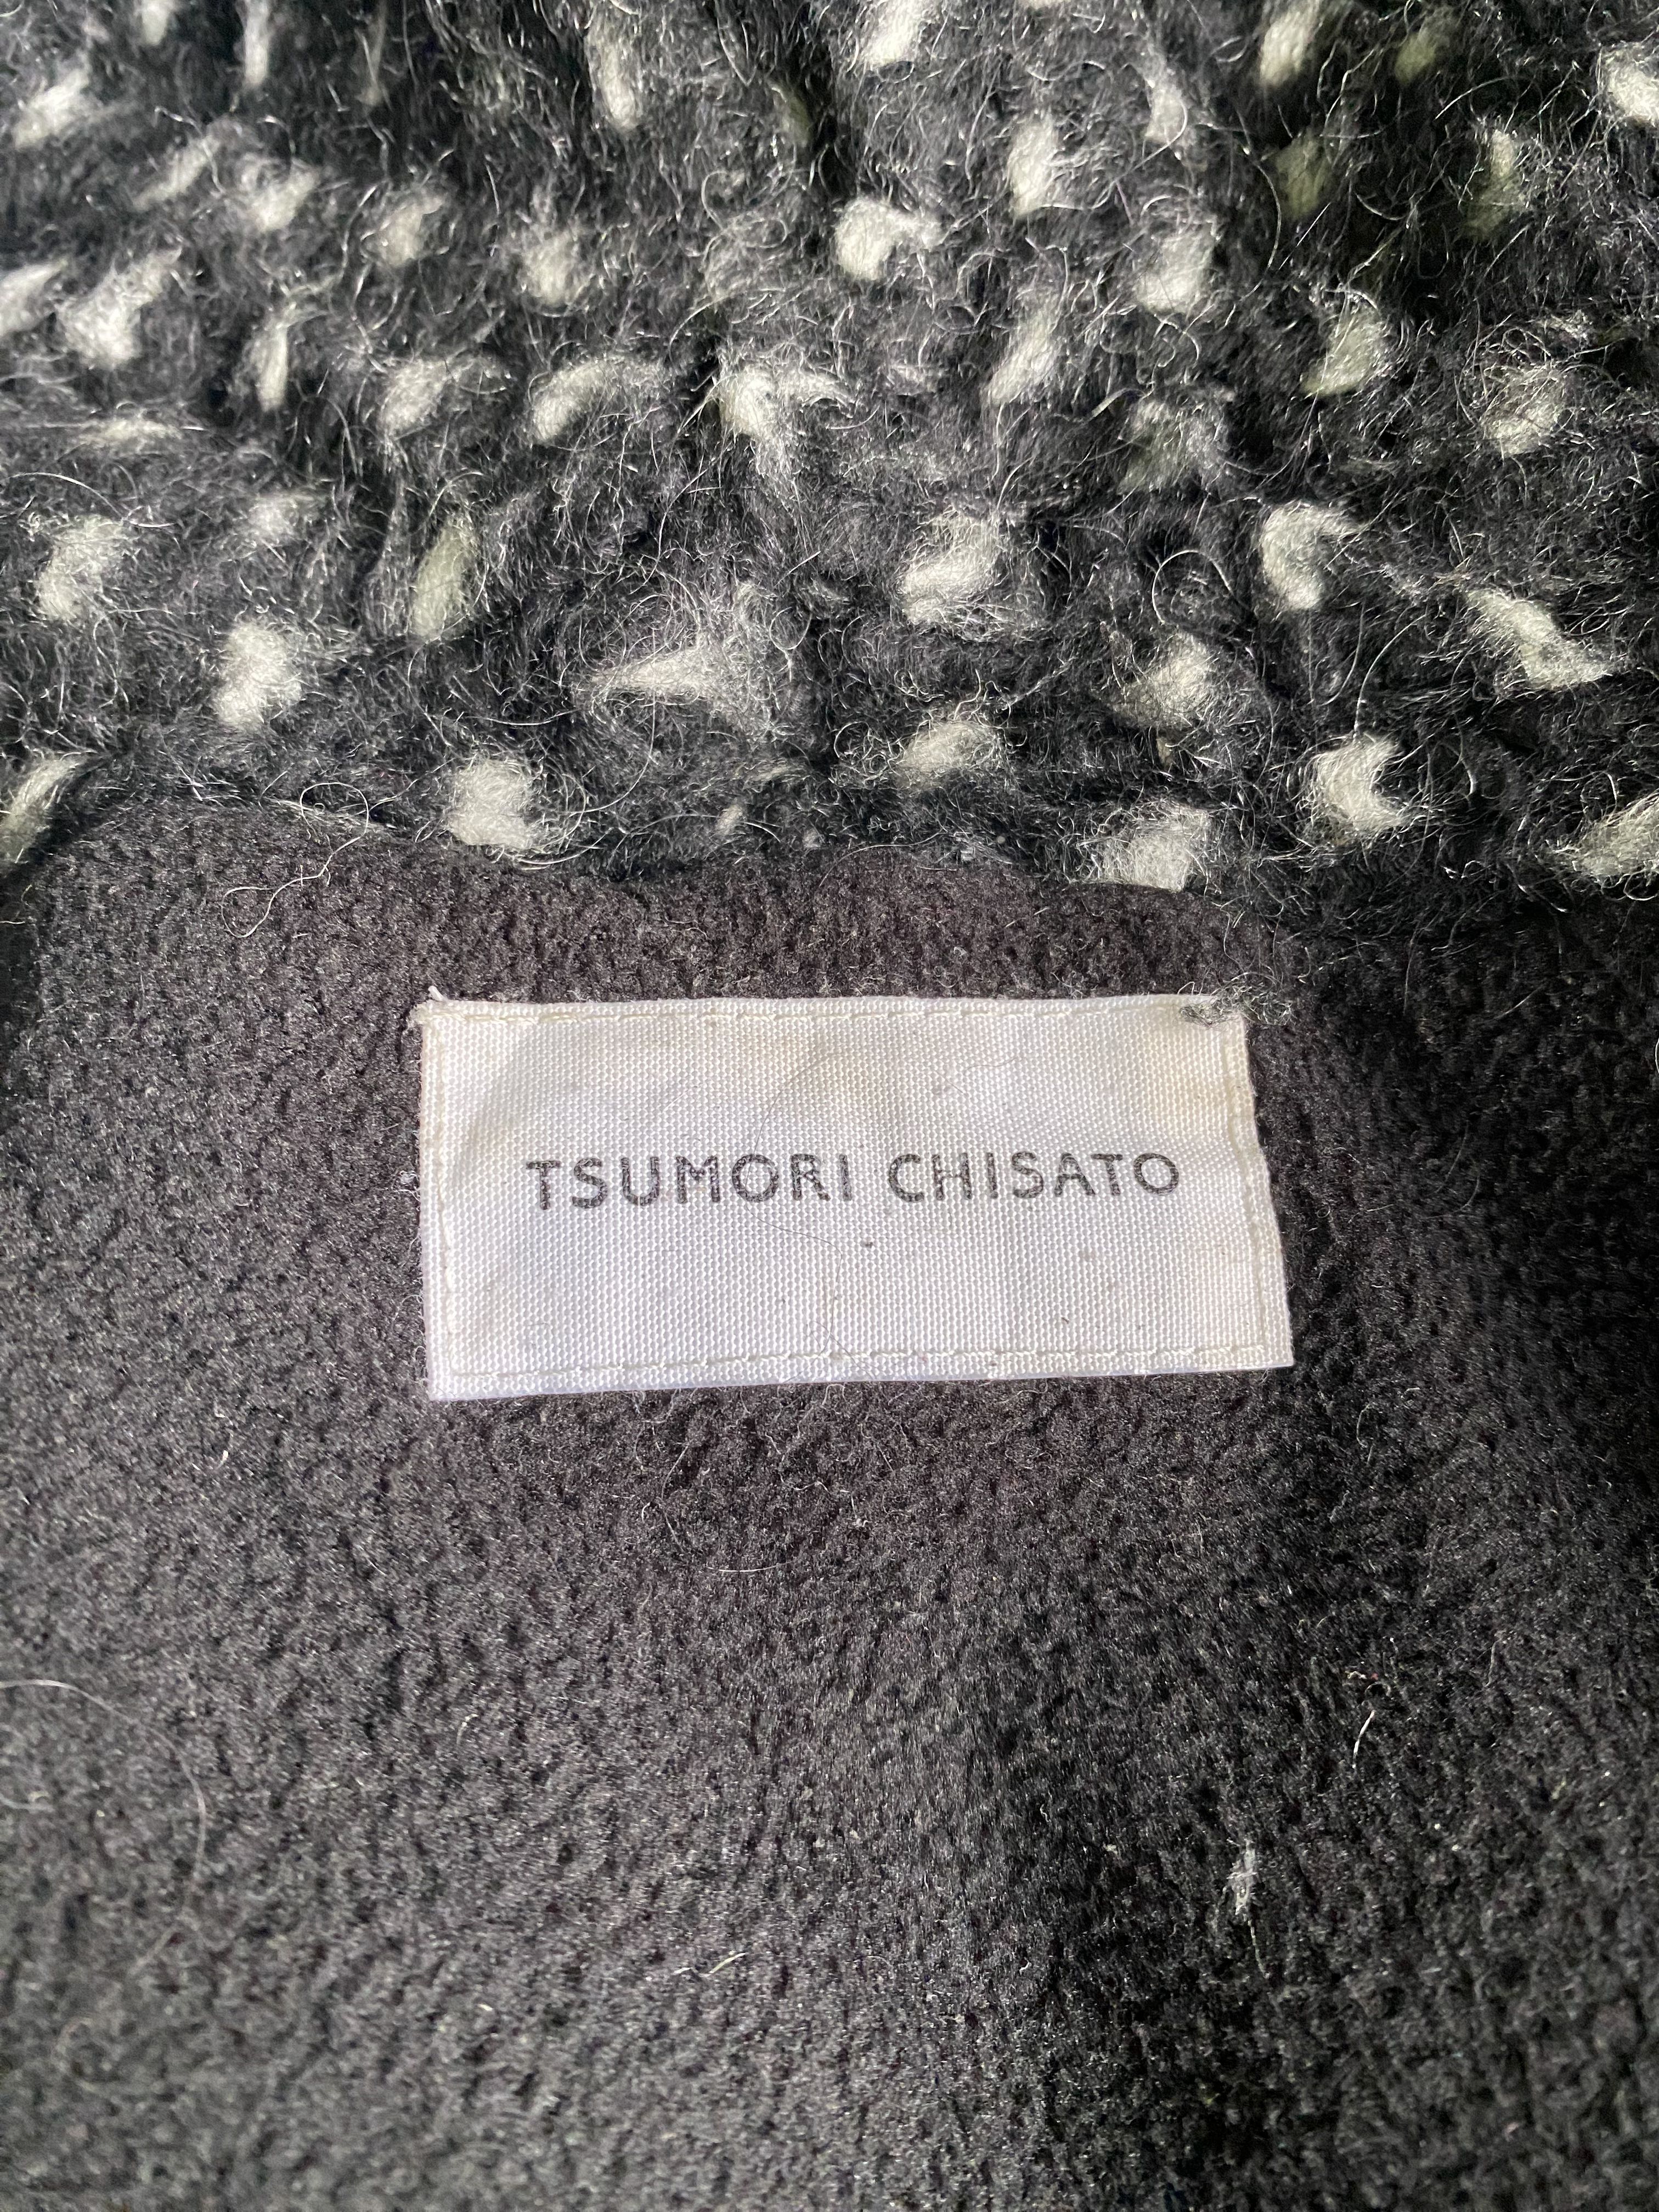 Tsumori chisato brushed Lining Low Gauge Knitwear  - 7